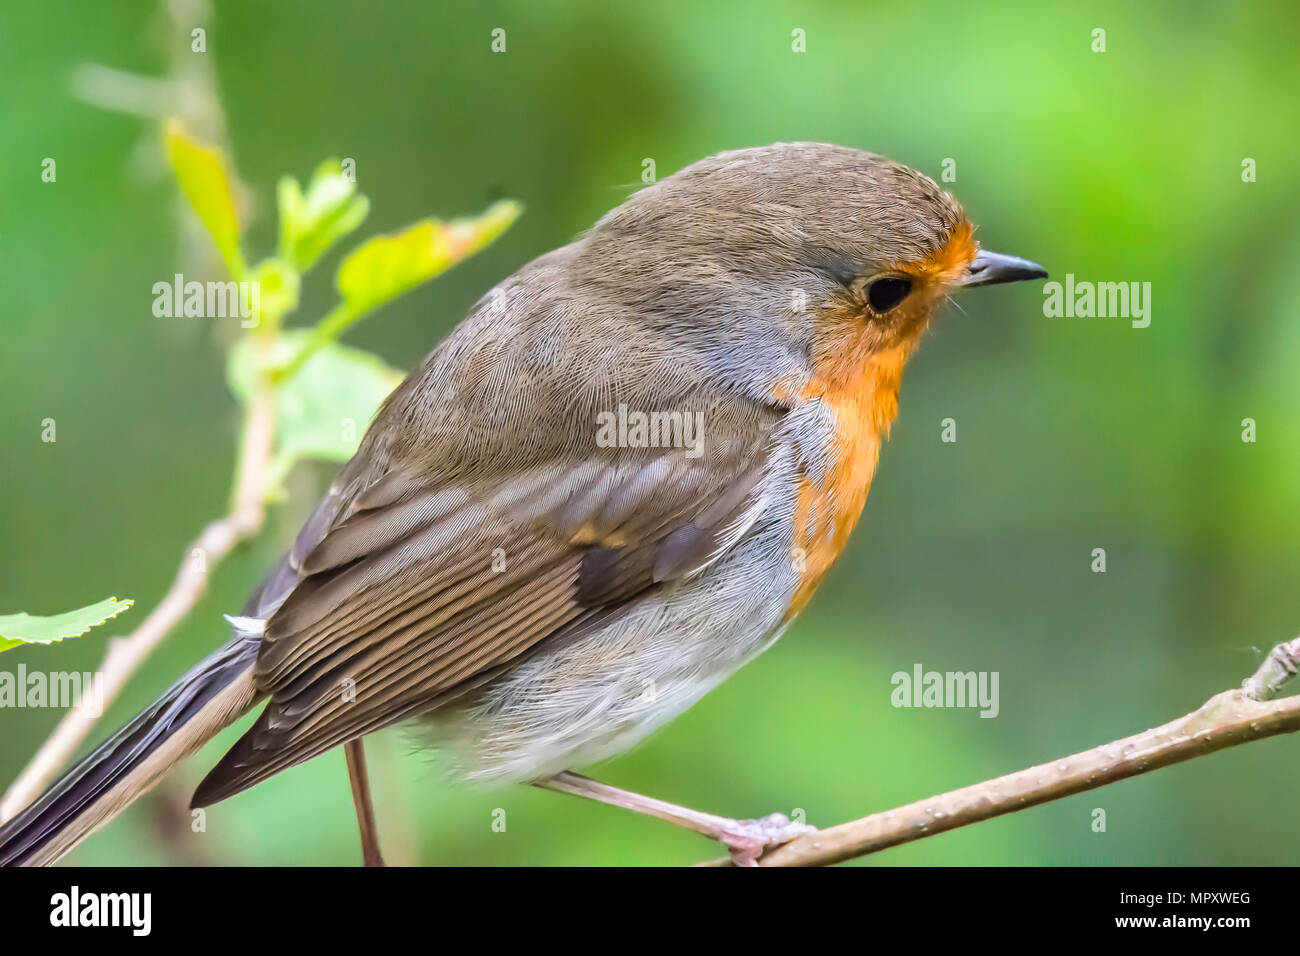 Europäische Robin hautnah. Süß, kleiner Vogel auf Ast in Woodland. Natur Uk. britischen Wildlife im Frühjahr. Natur details. natürliche Welt. Stockfoto